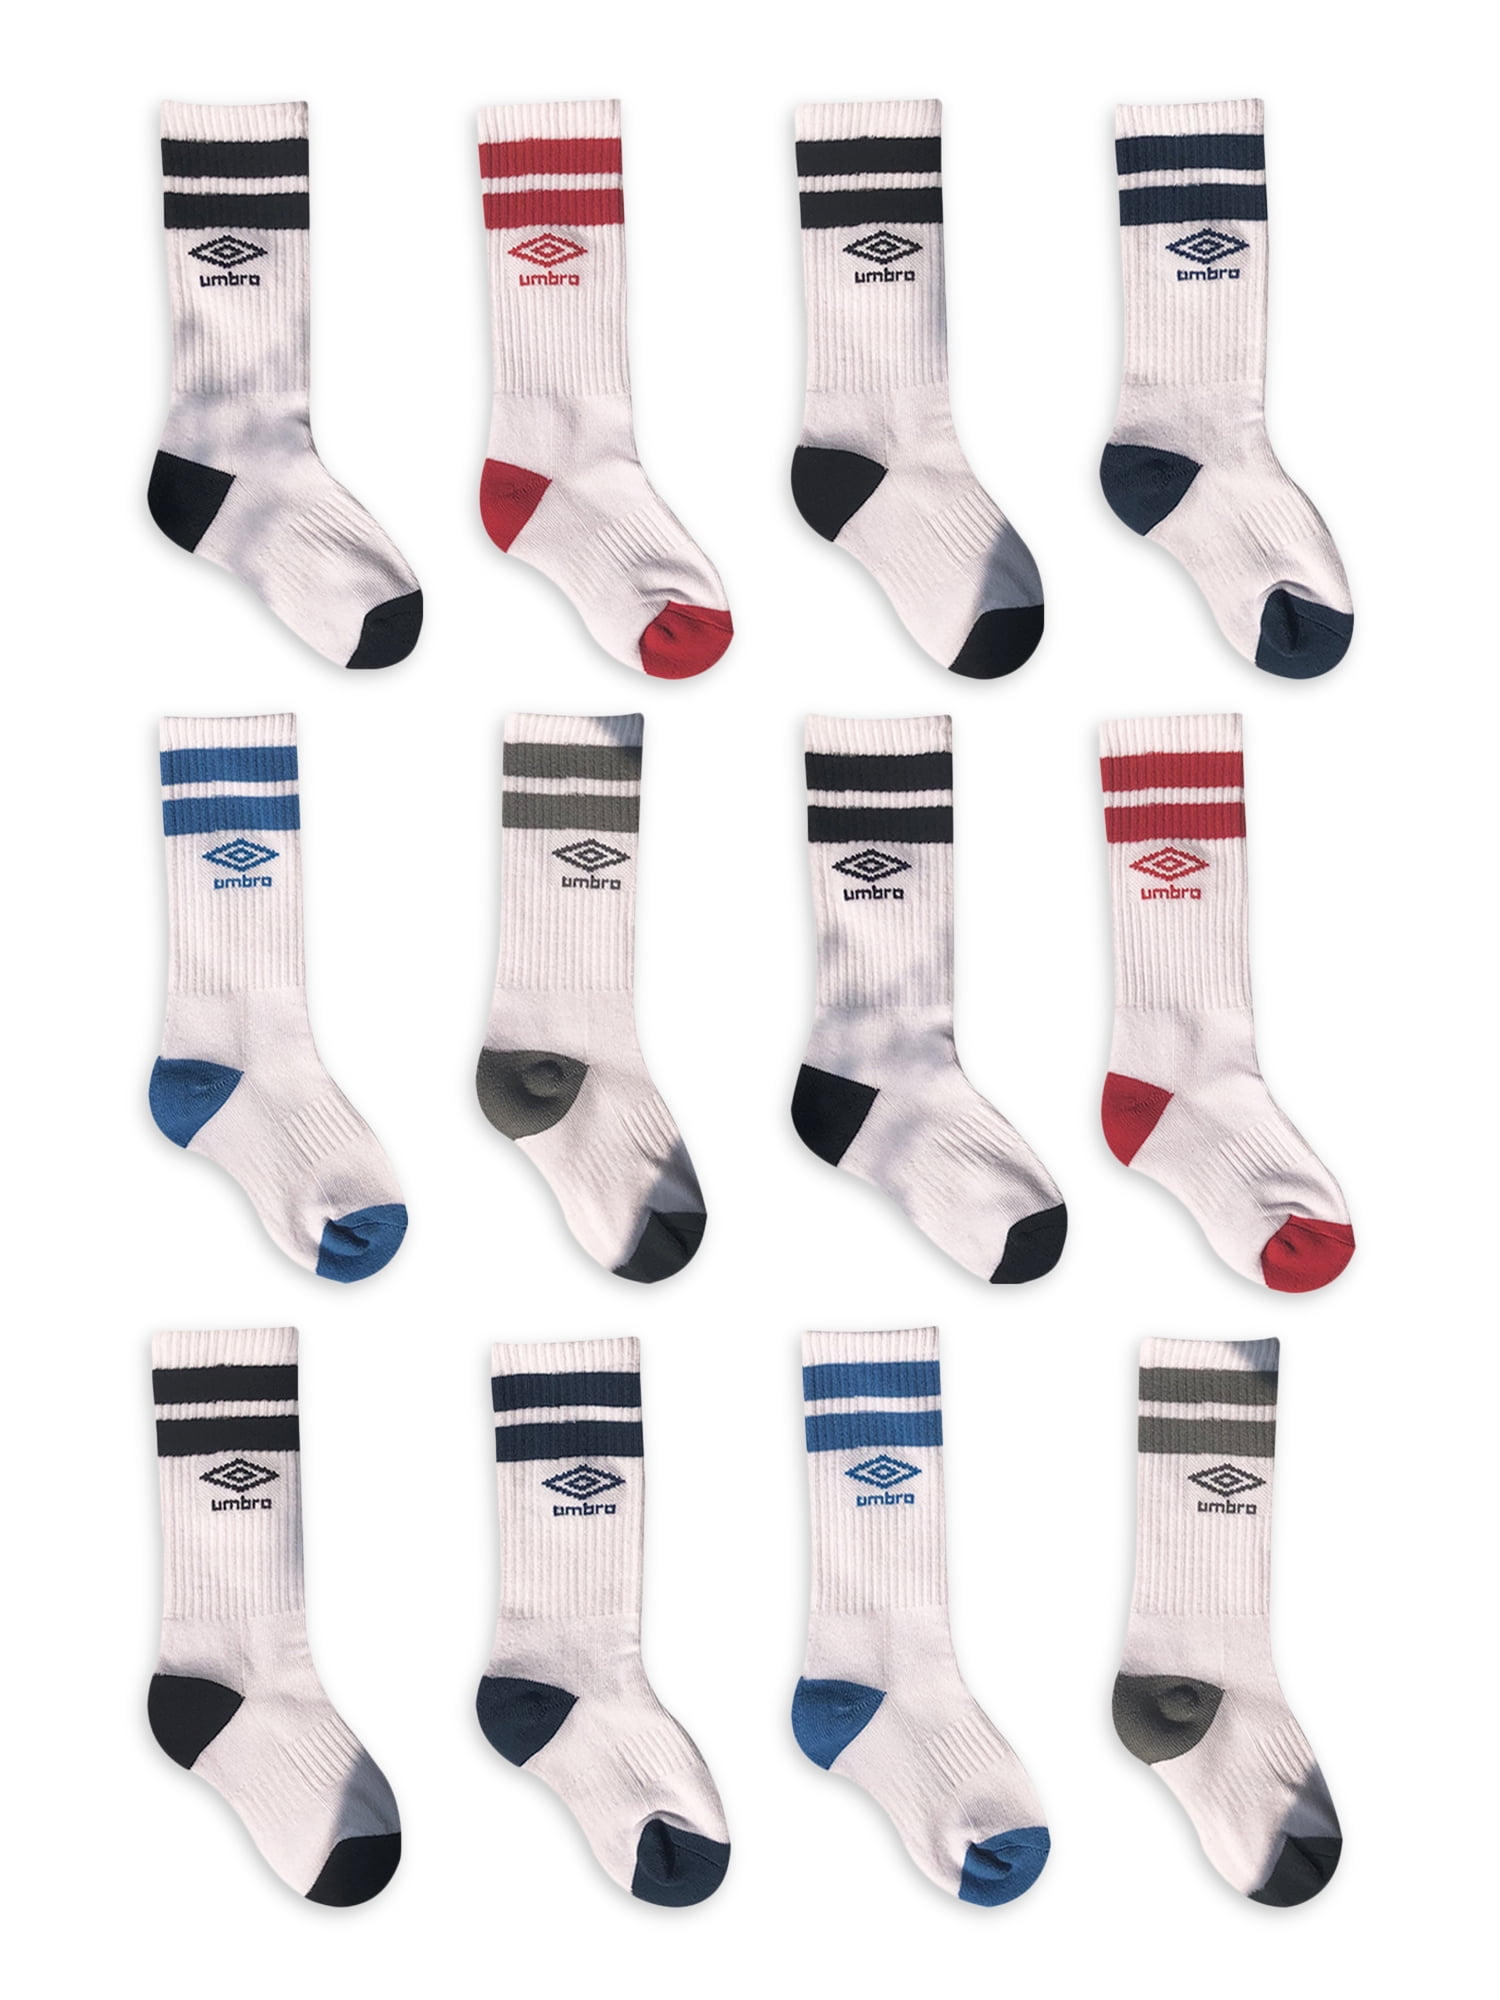 Umbro Boys Socks, 12 Pack Crew Socks Sizes S - L - Walmart.com